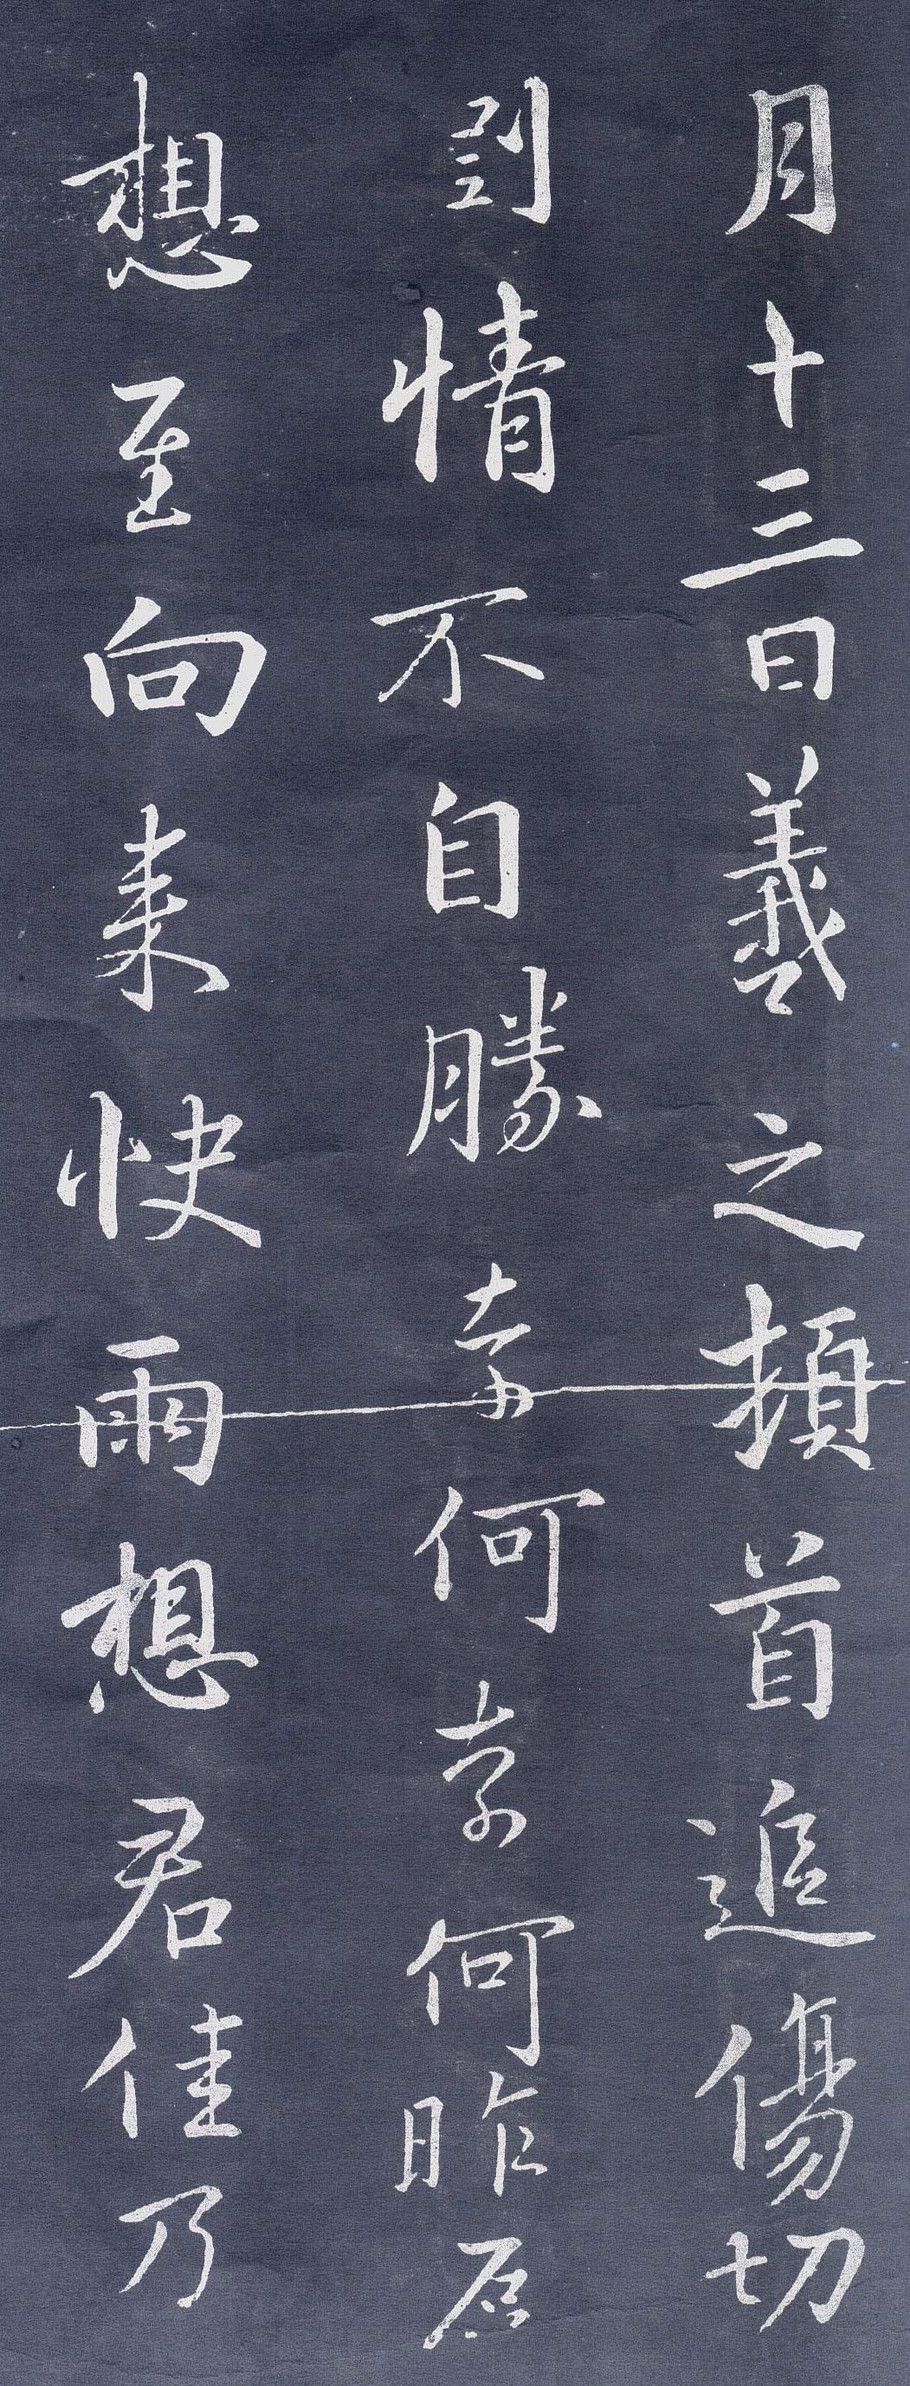 但在中国书法的历史上,却是行书产生了最具经典意义的作品,以王羲之的